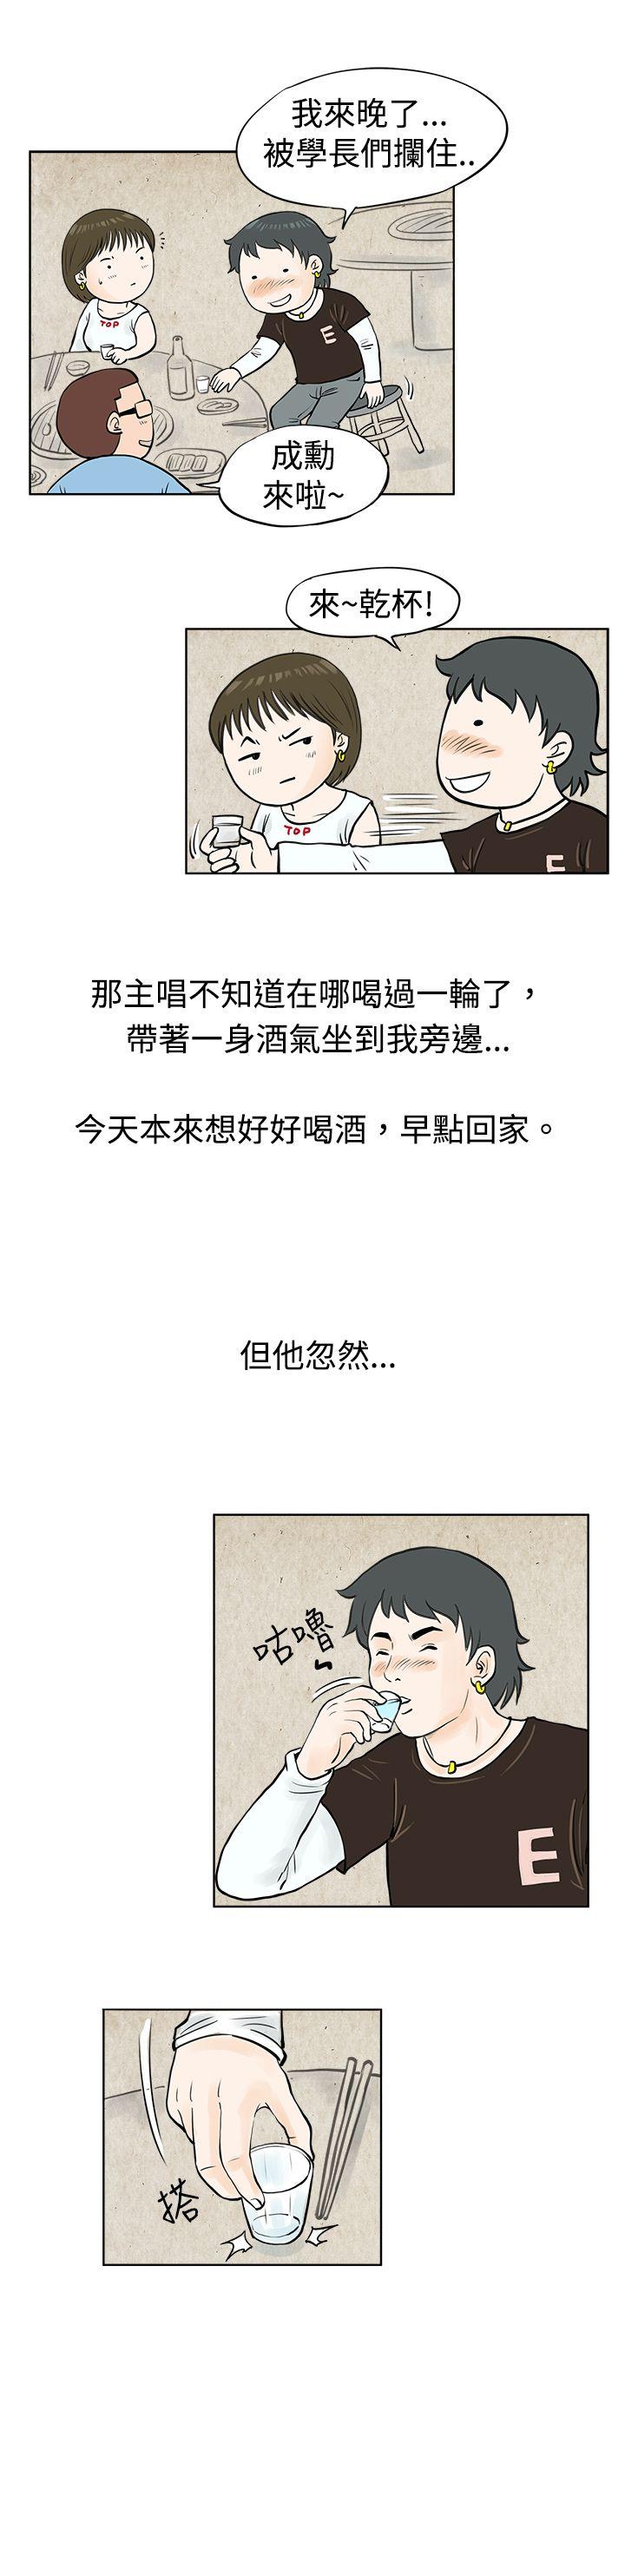 韩国污漫画 秘密Story 发生在热音社的小故事(上) 10